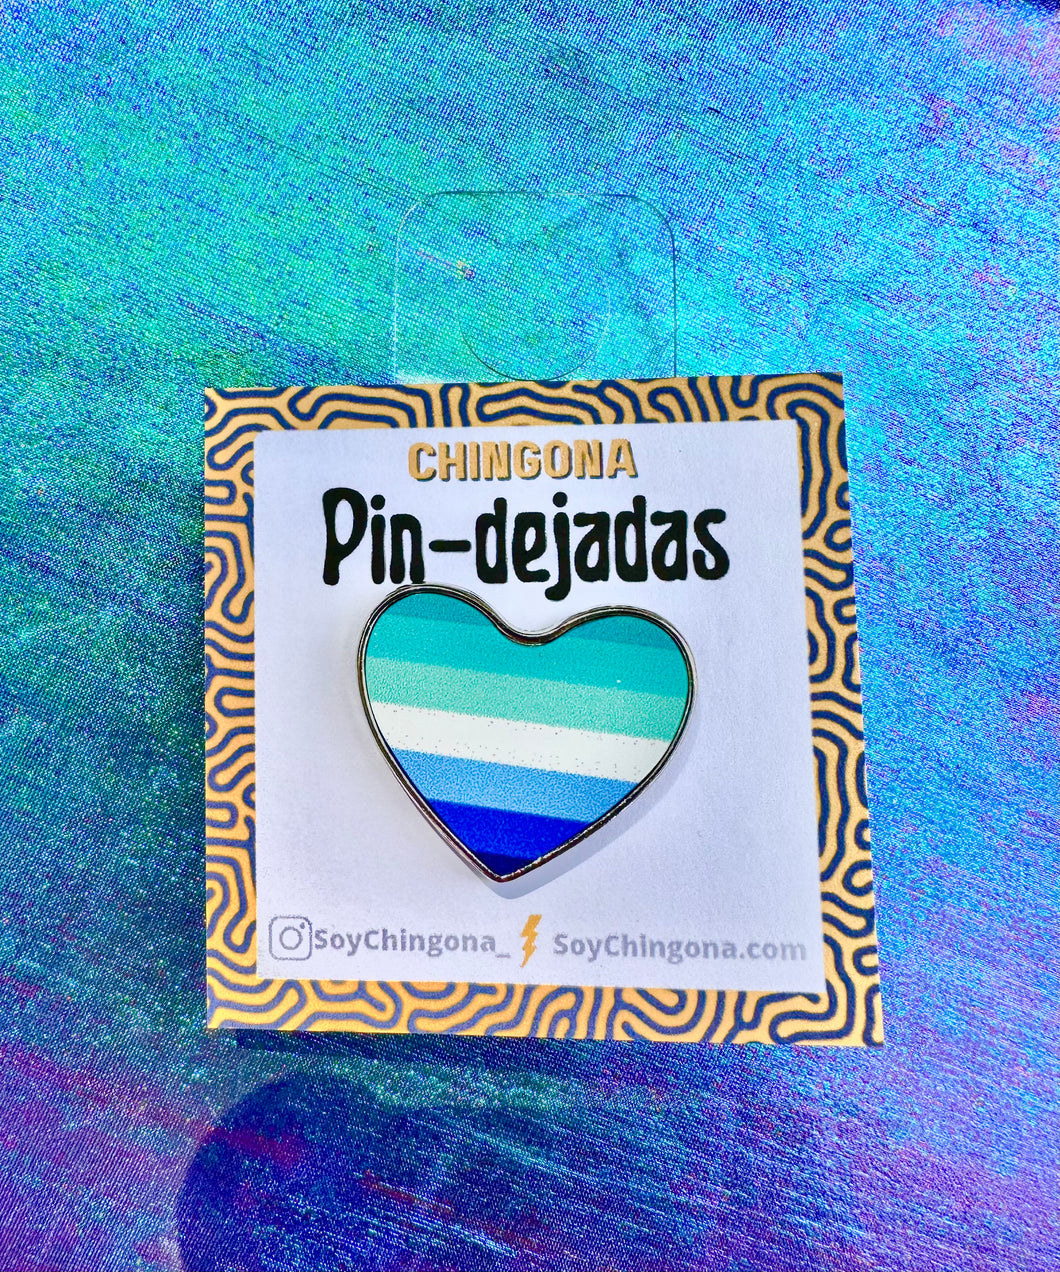 Gay men pride Flag Pin